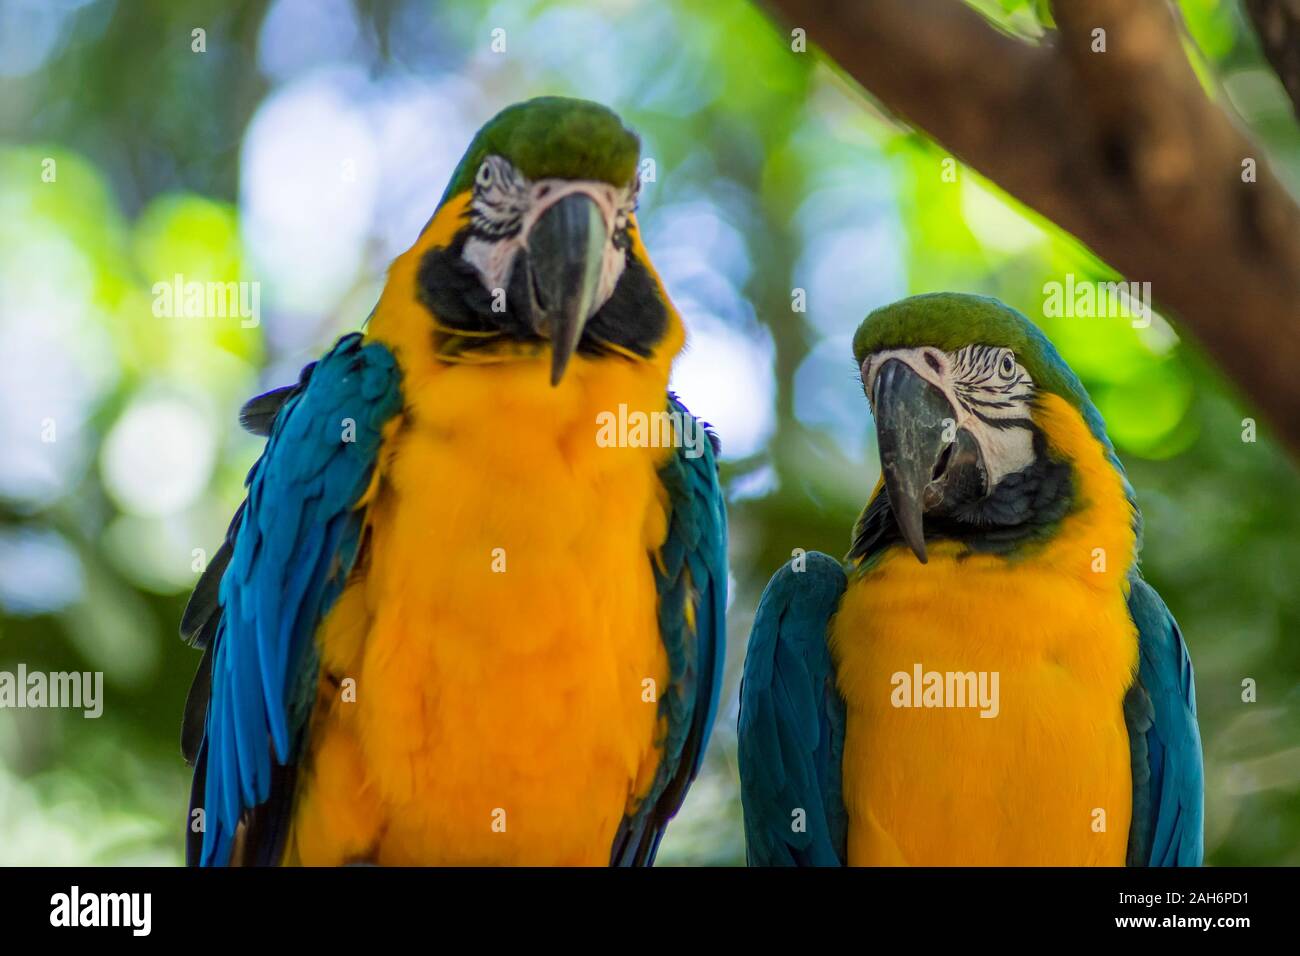 Ara ararauna, blau-gelb Ara Papagei Vogel im Parque das Aves, Foz do Iguacu, Parana, Brasilien Vogel Park Iguazu Wasserfälle Stockfoto